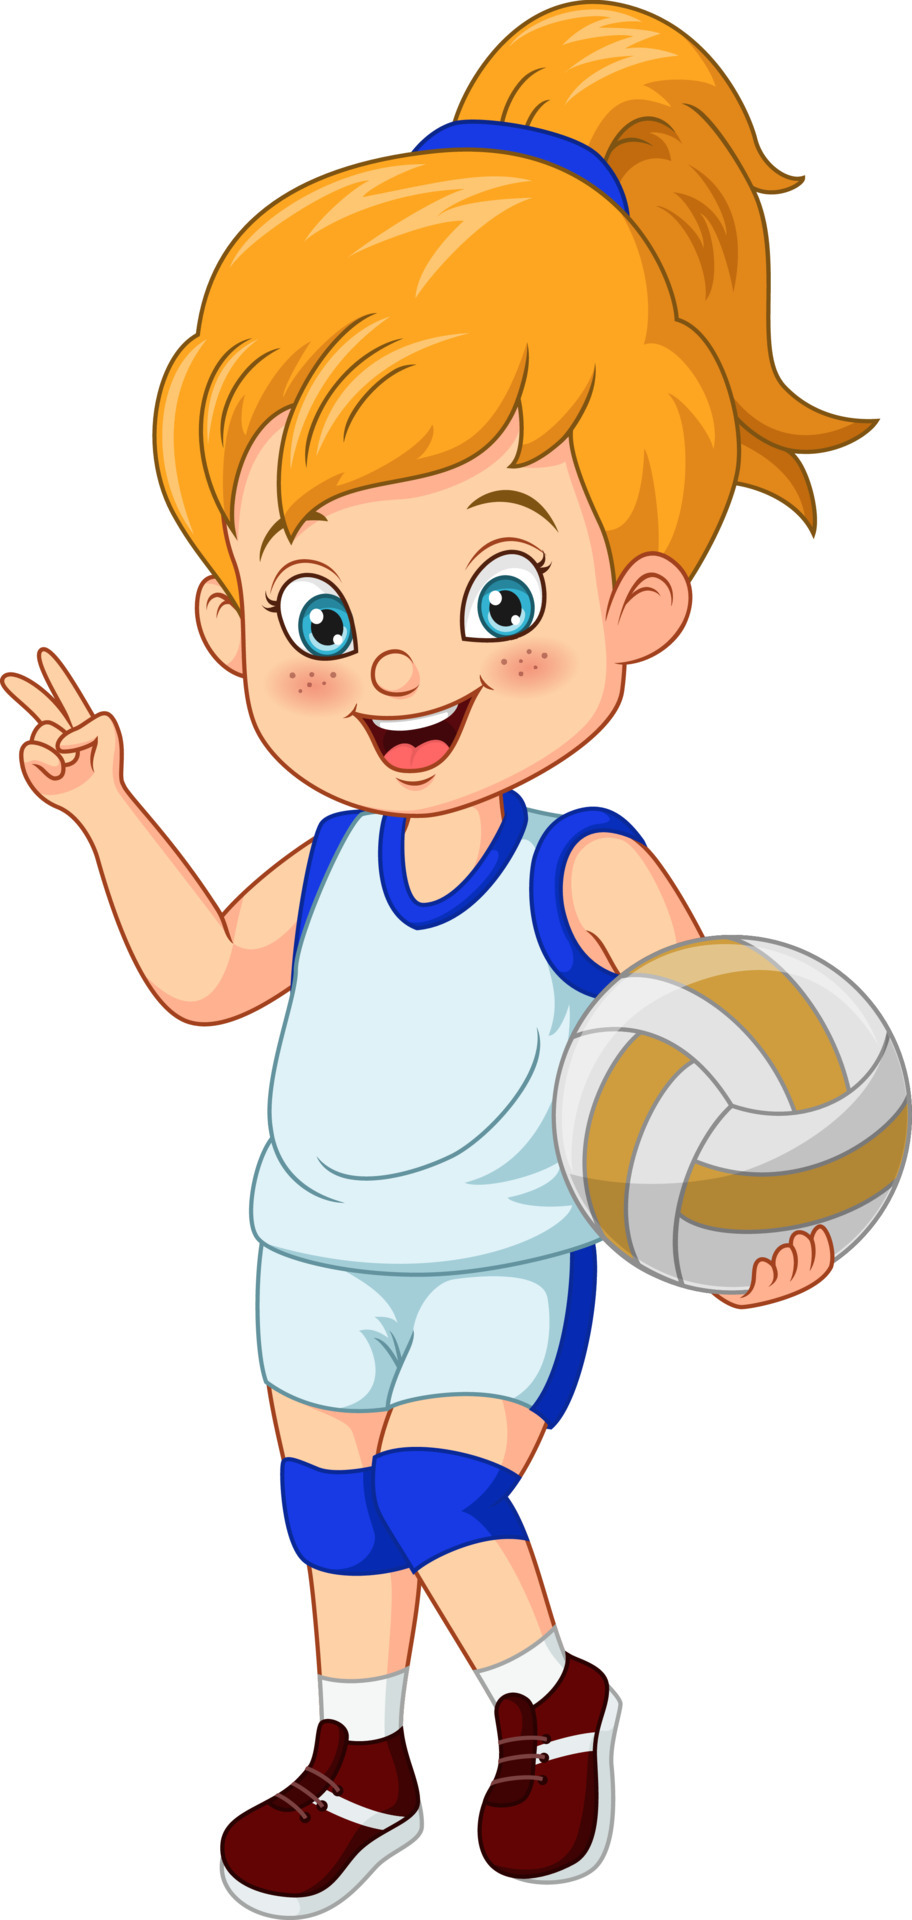 Cartoon cute girl volleyball player 5112869 Vector Art at Vecteezy